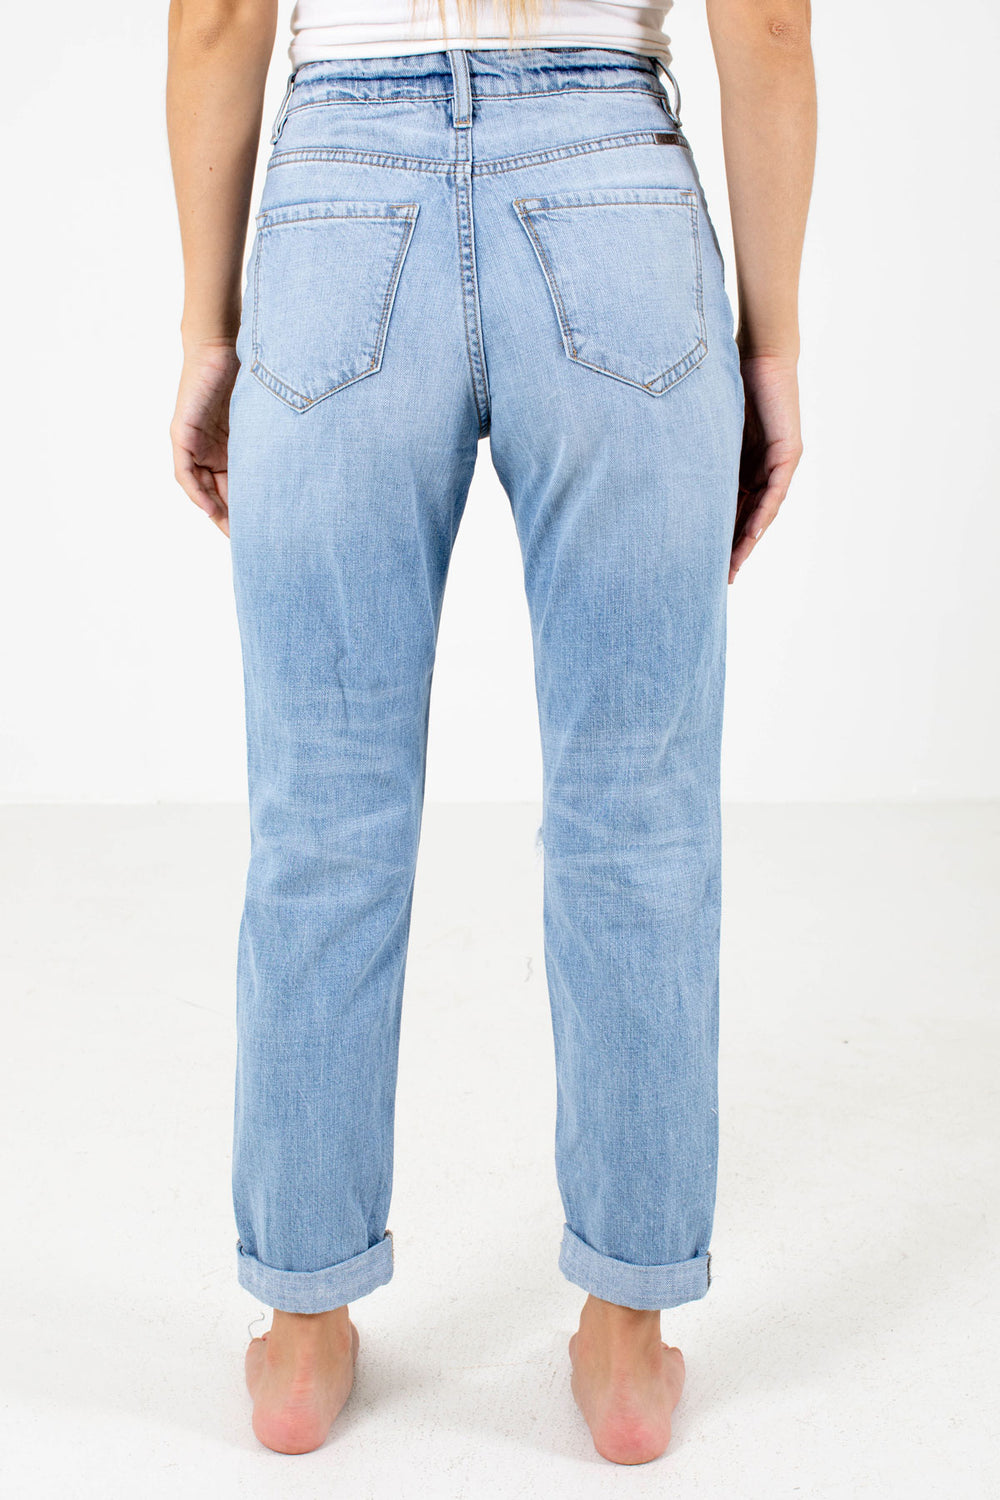 Old Friend Blue KanCan Jeans | Boutique Jeans for Women - Bella Ella ...